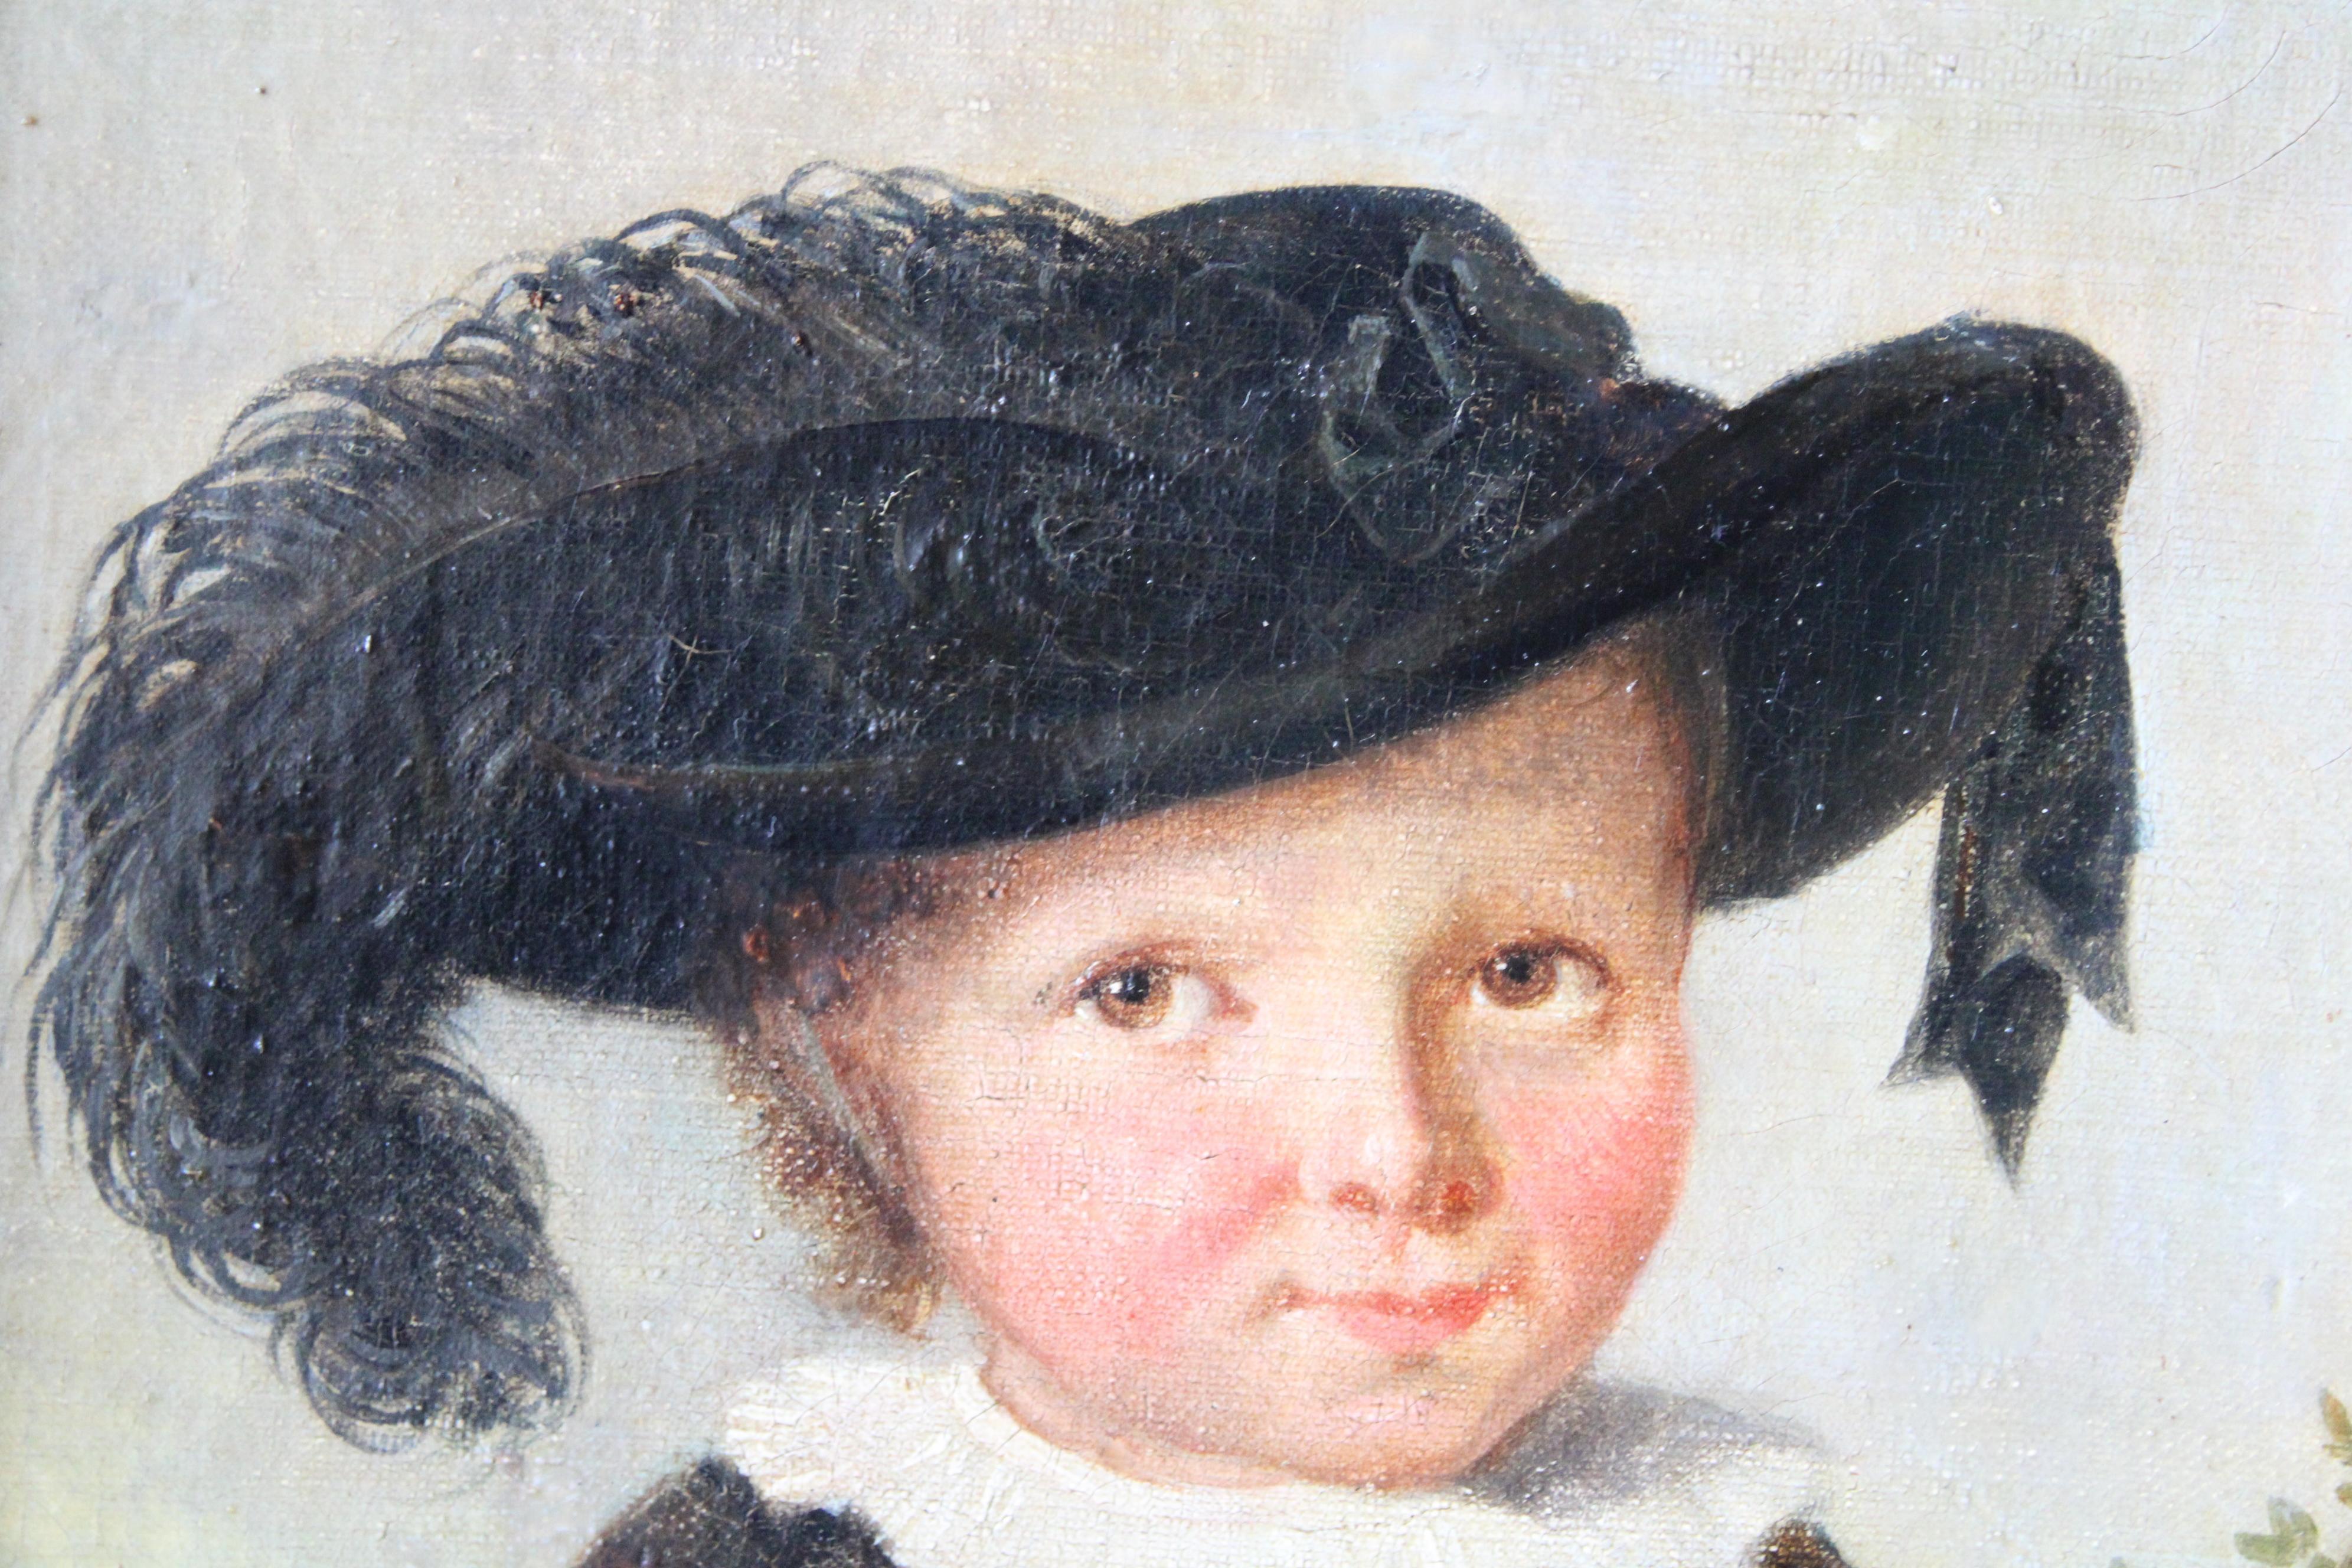 Antique portrait of a boy, child portrait, early 1800's male framed portrait - Black Portrait Painting by Unknown